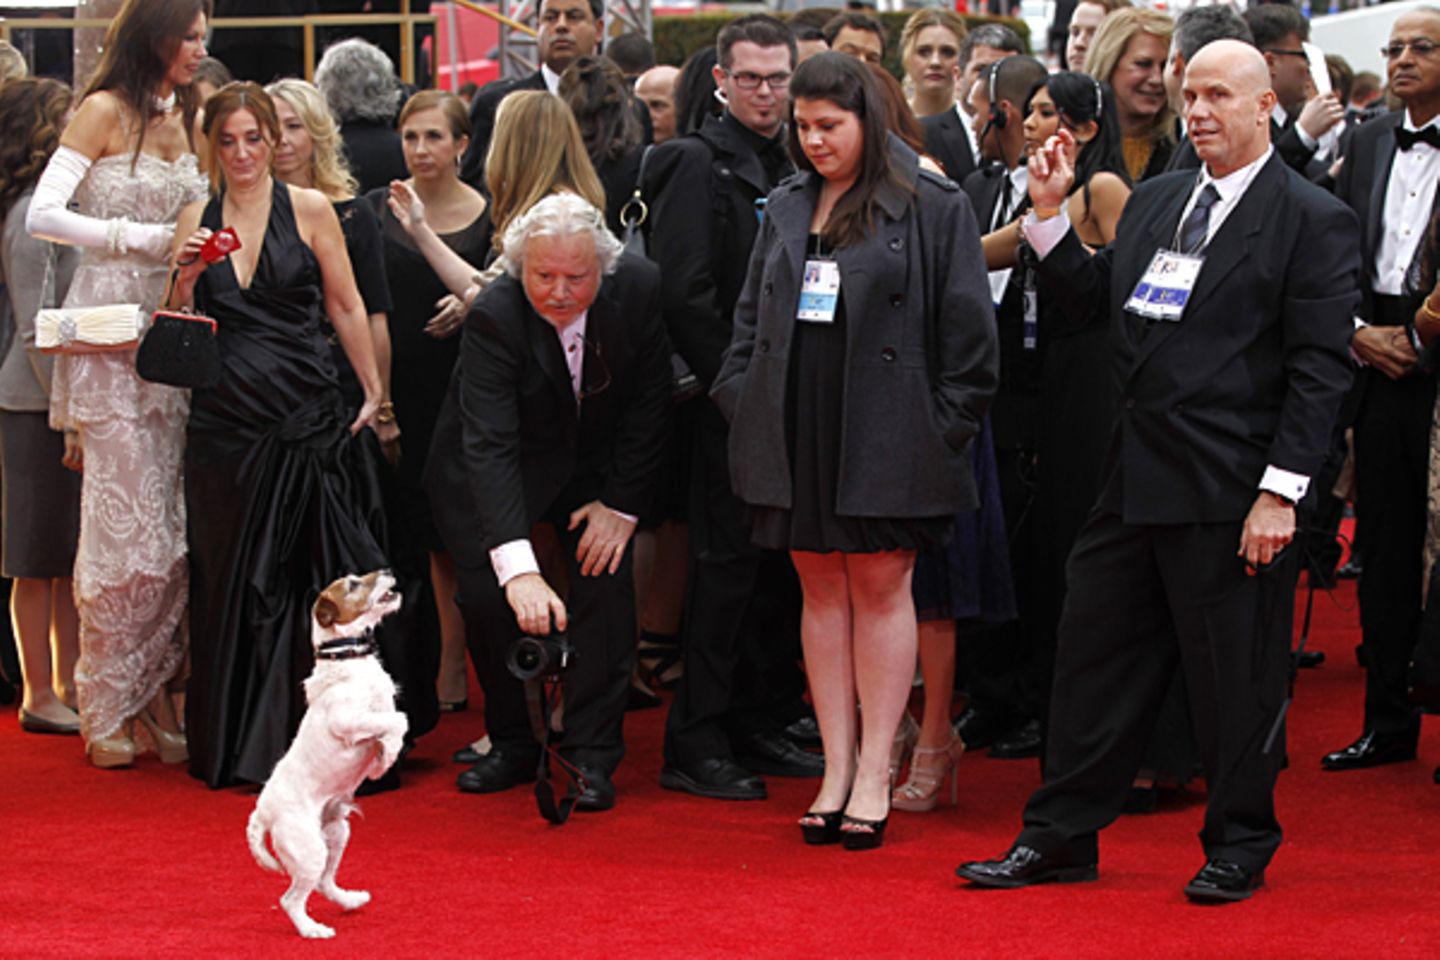 Jack-Russell-Terrier Uggie zeigt auf dem roten Teppich, was er kann. Als tierischer Darsteller in "The Artist" hatte er schon be